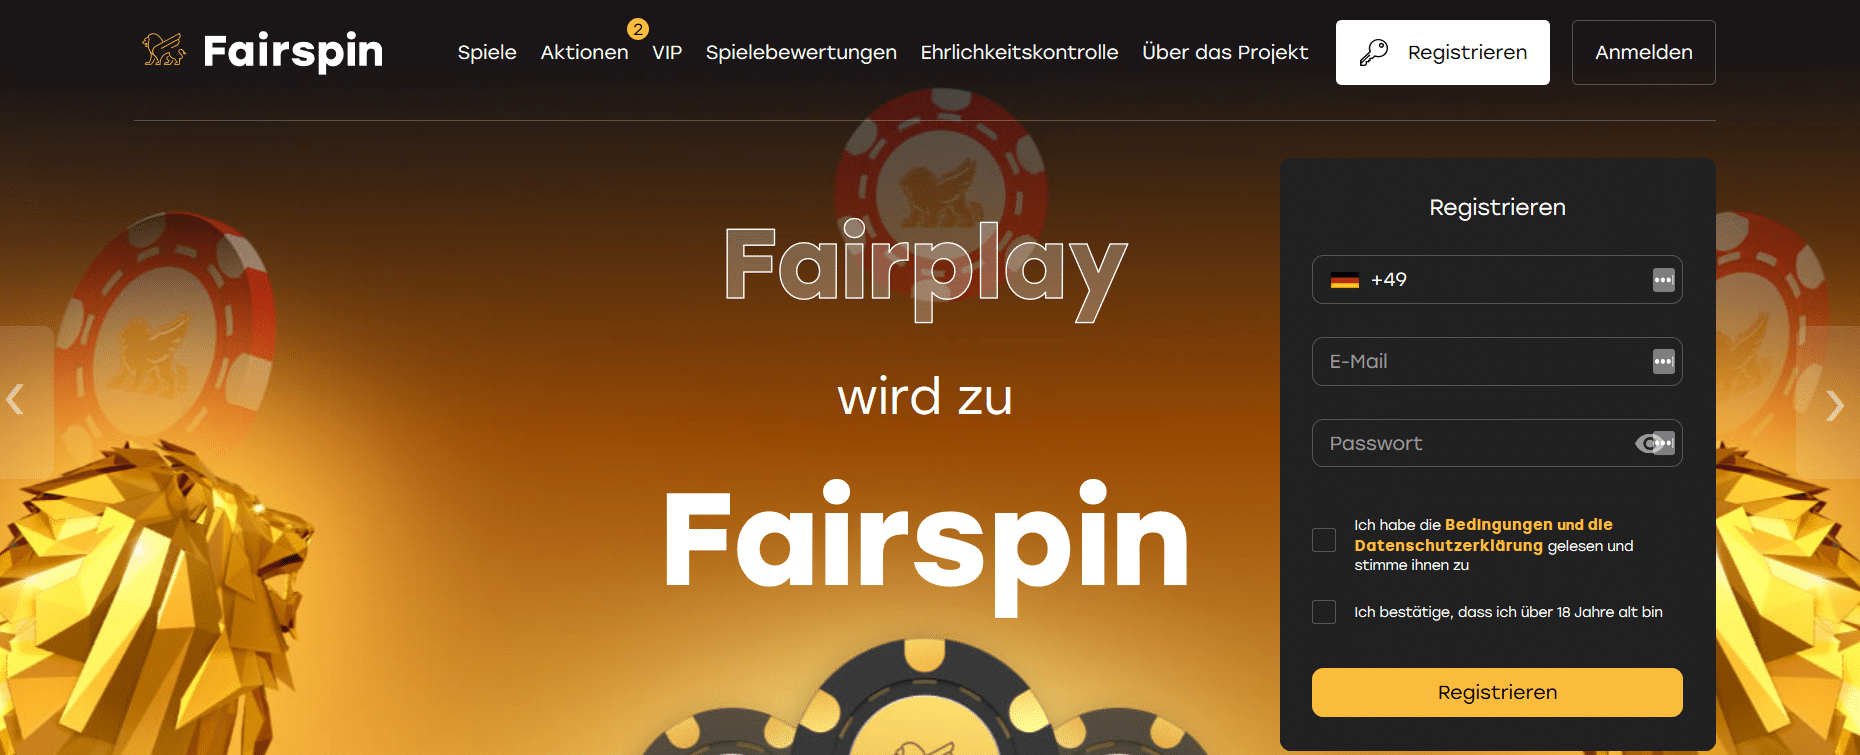 Fairspin.io Test